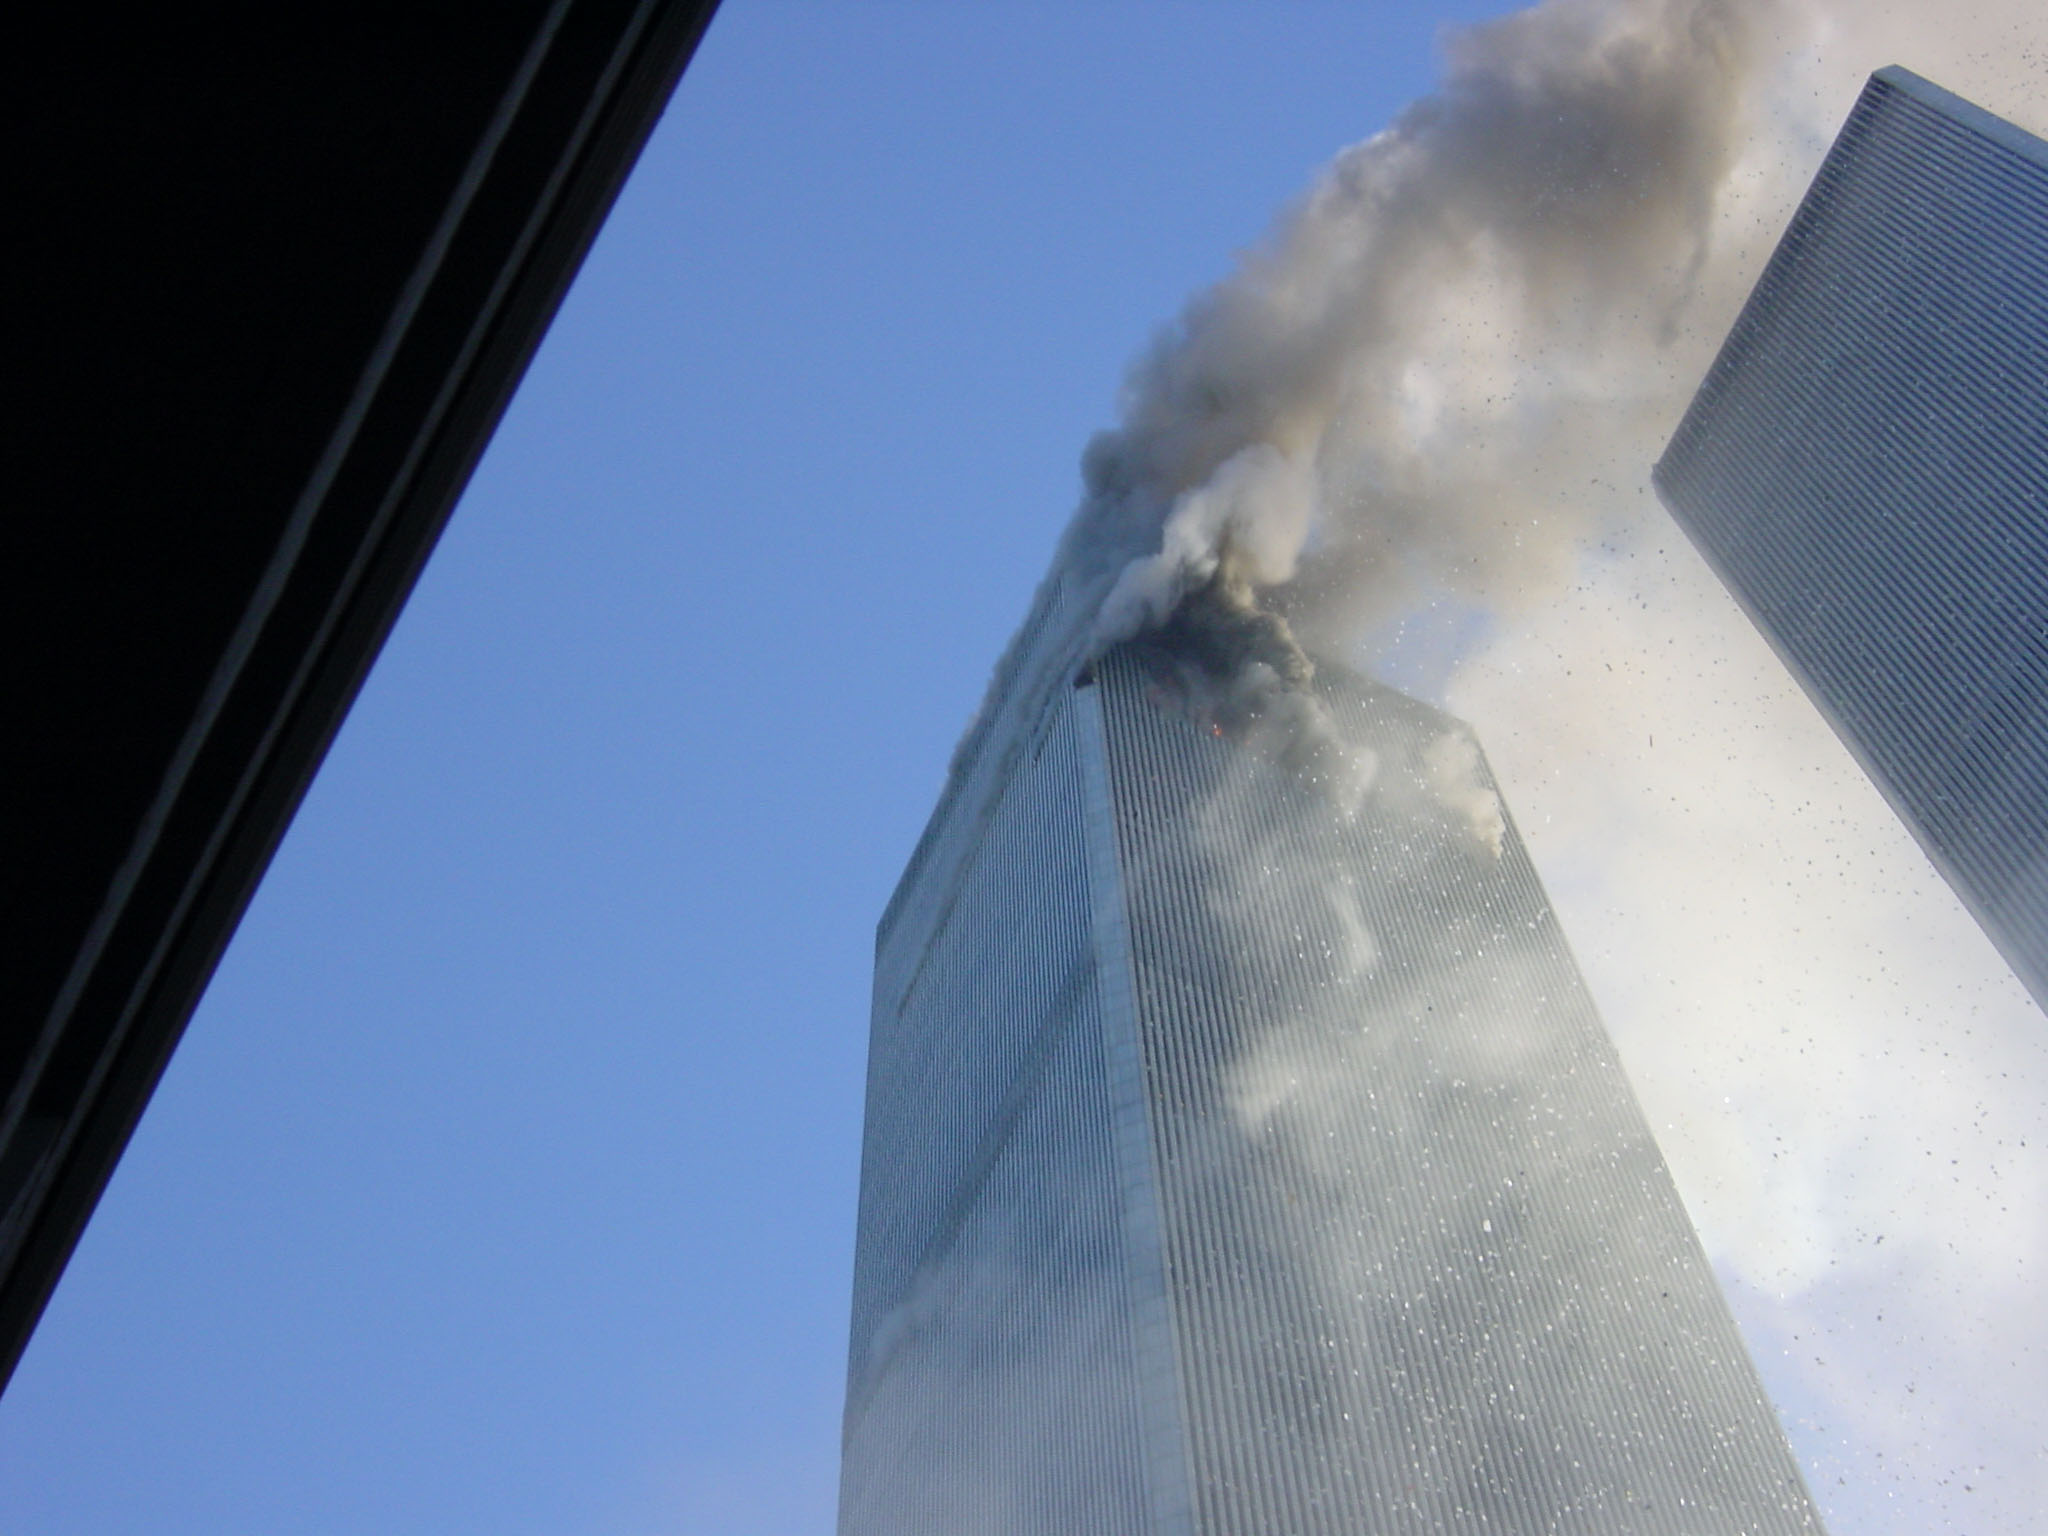 9/11 incident